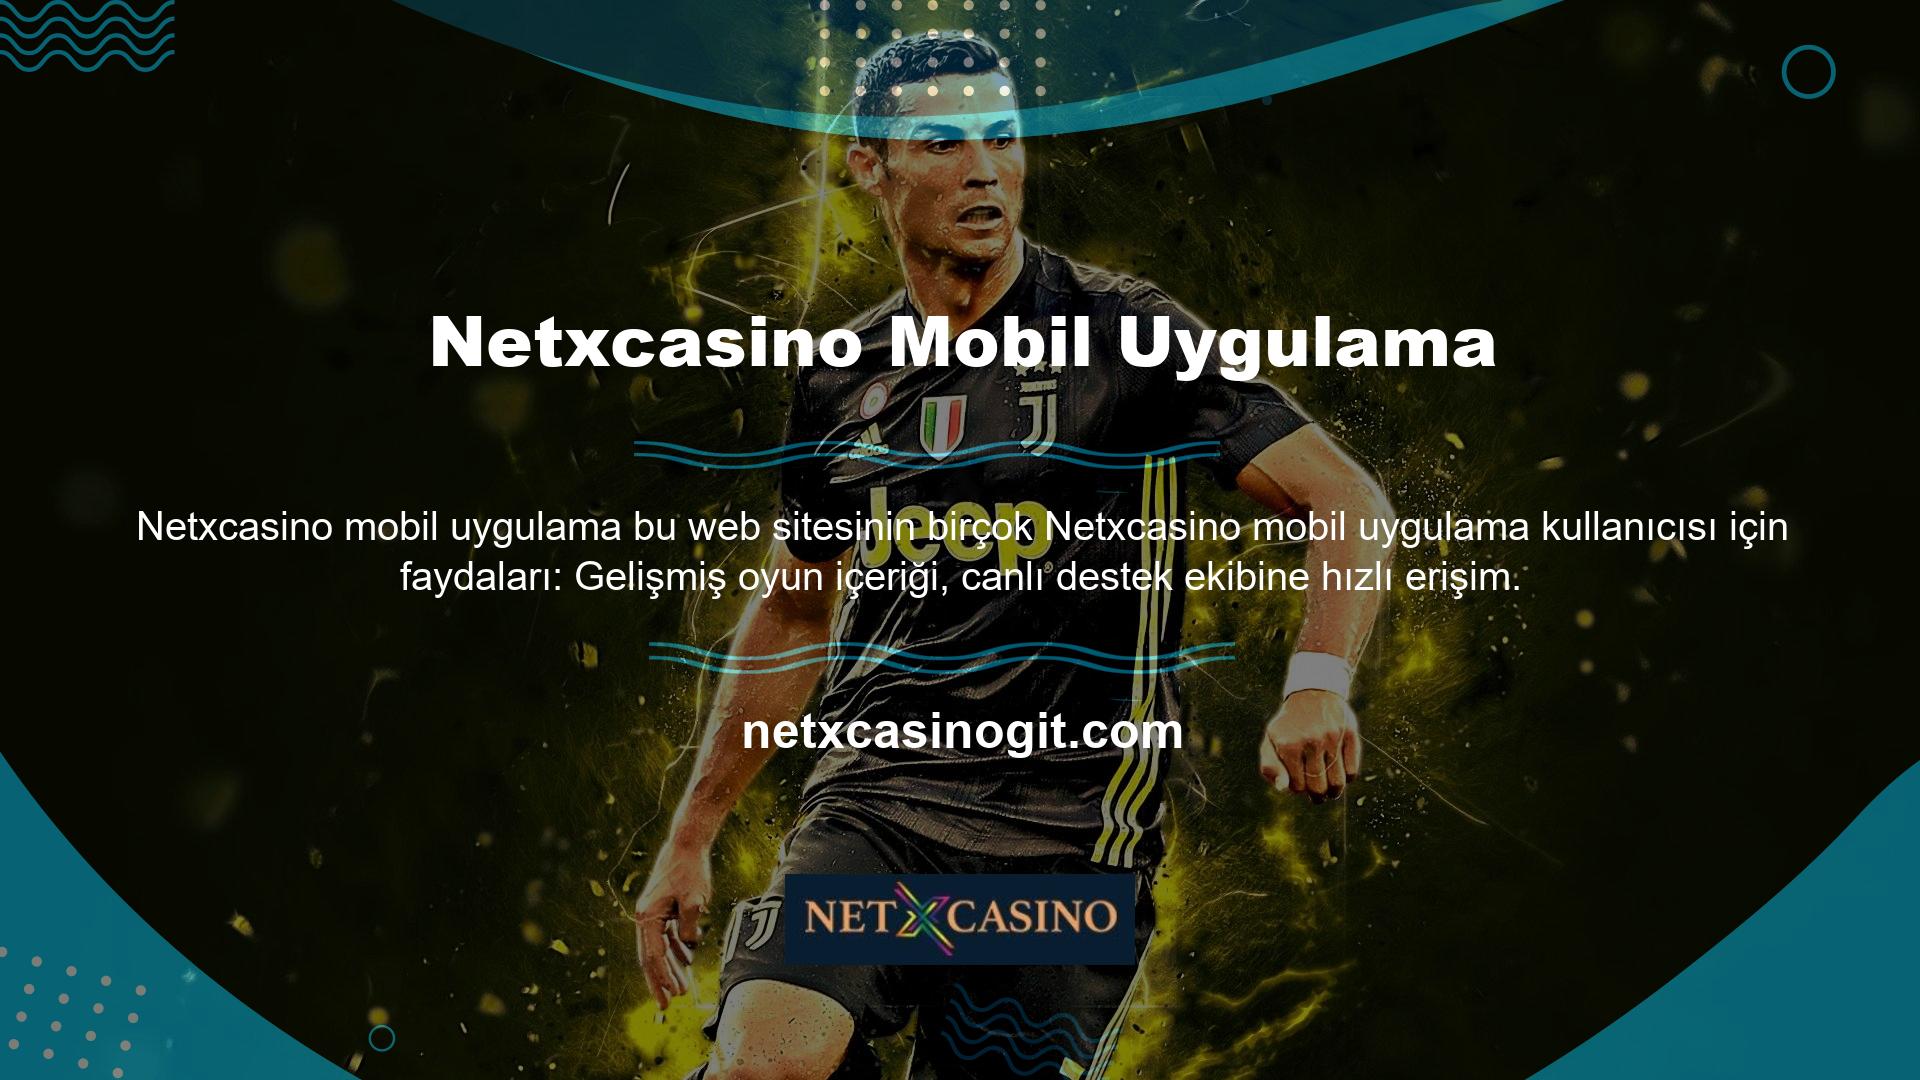 Netxcasino mobil uygulamasında kullanılan içerikler müşteri memnuniyeti odaklı çalışmanıza olanak sağlar